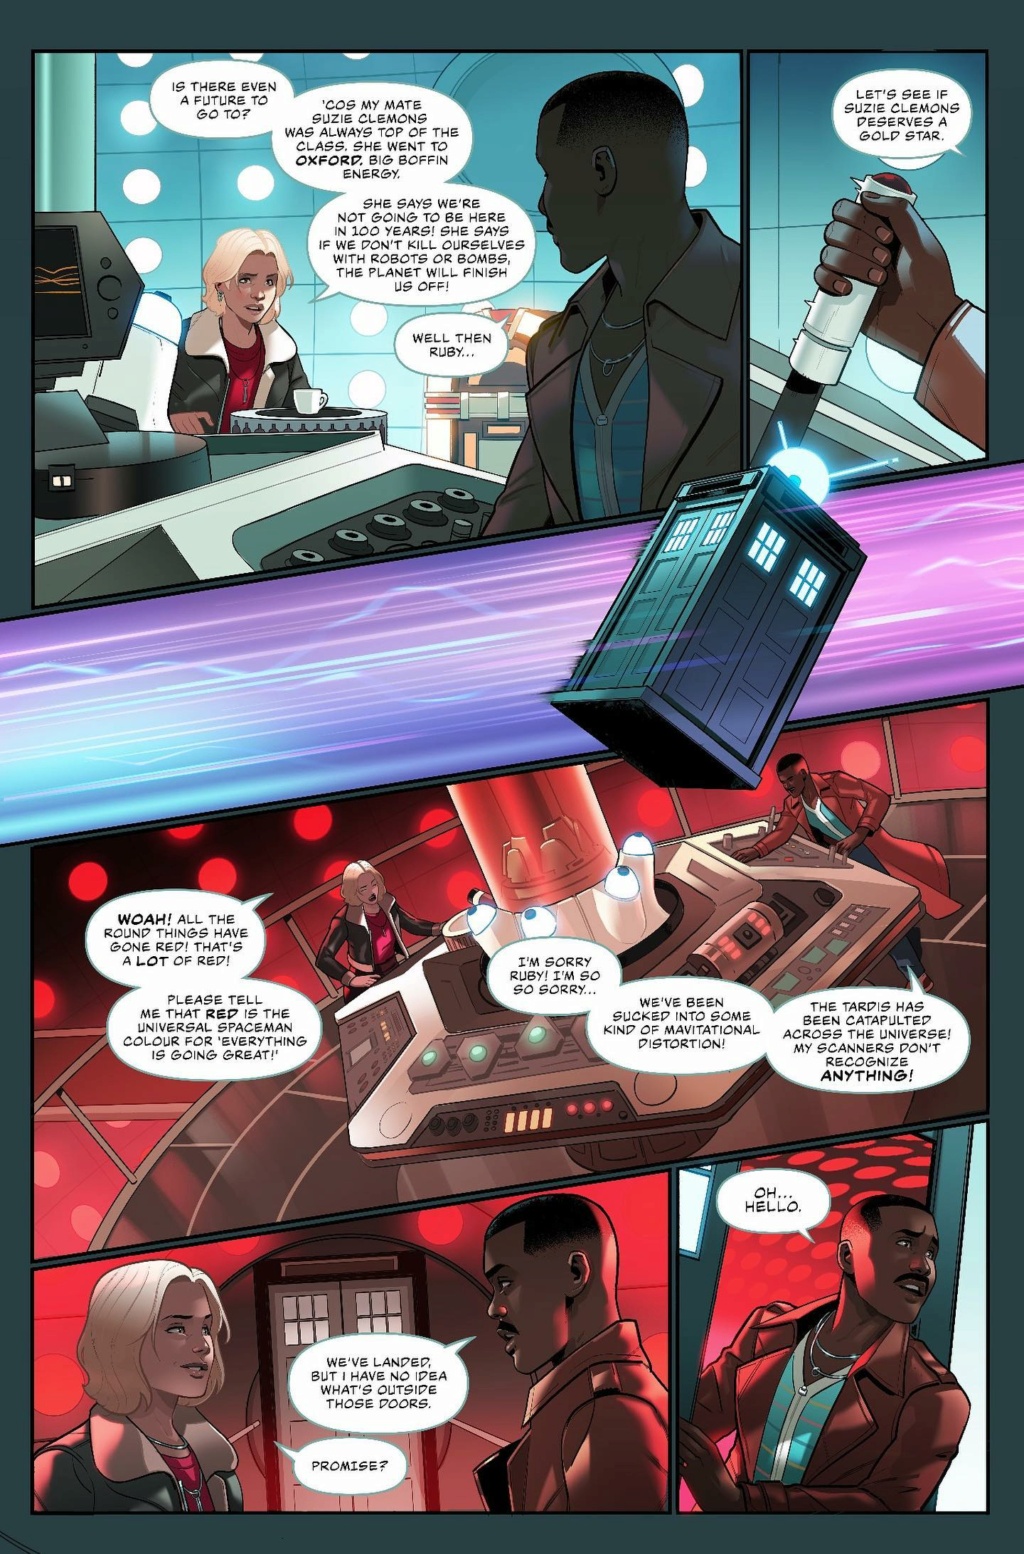 Doctor Who: (Fan) Comic Dw15-310